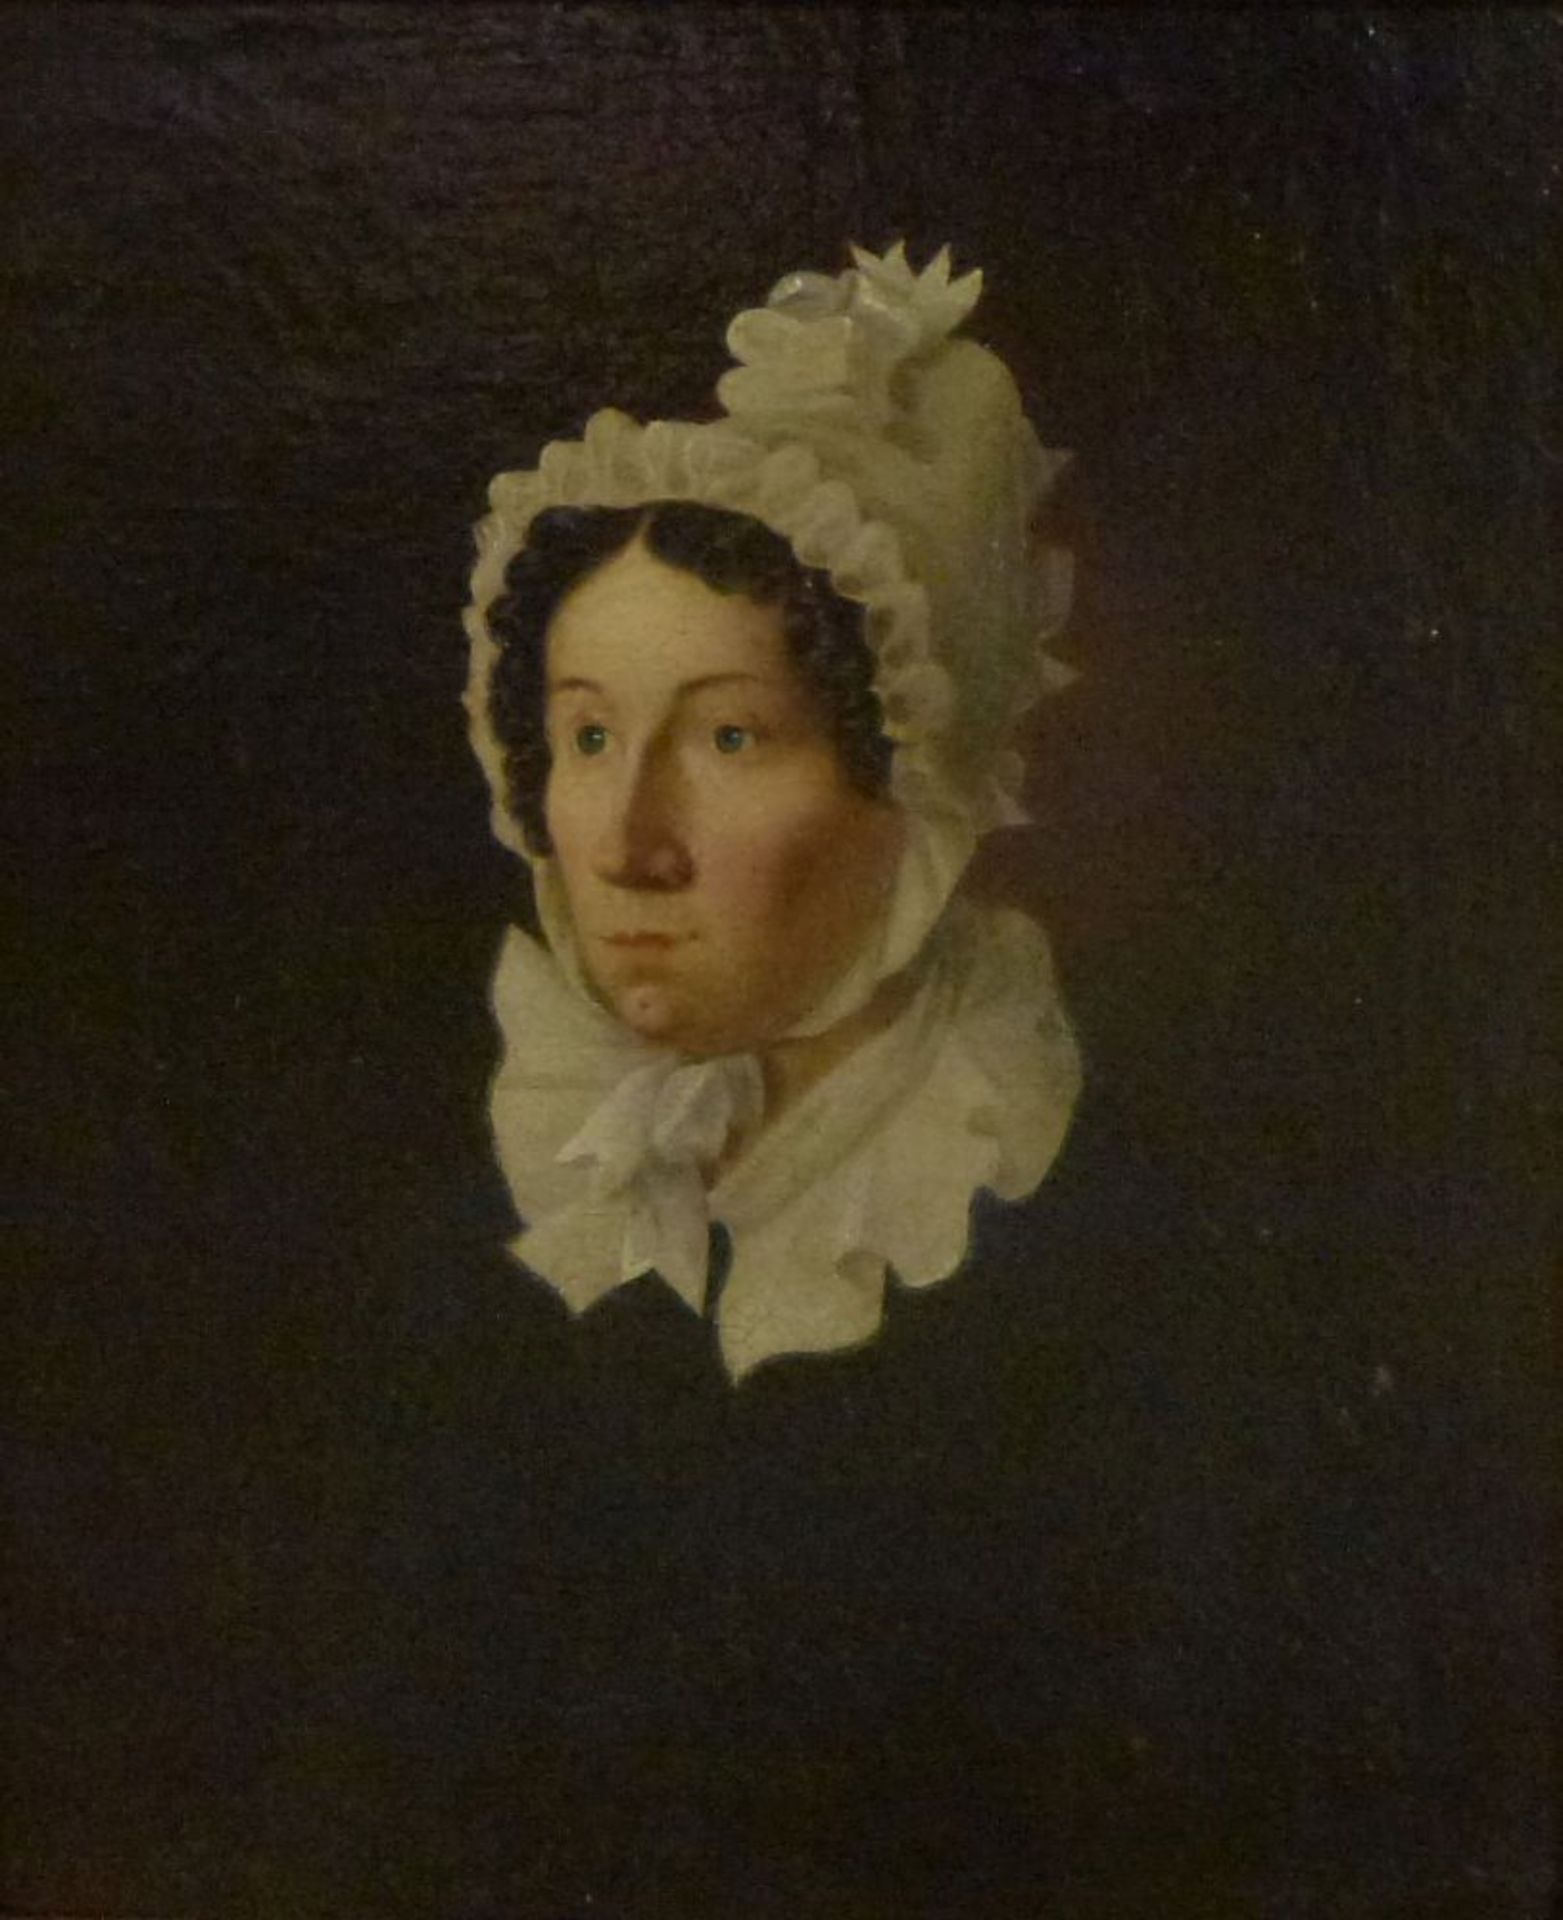 Portrait einer Dame, 1849Öl/Lw, sign.: E.Meuten? Biedermeierdame in Rüschenhaube und Kragen, GR,